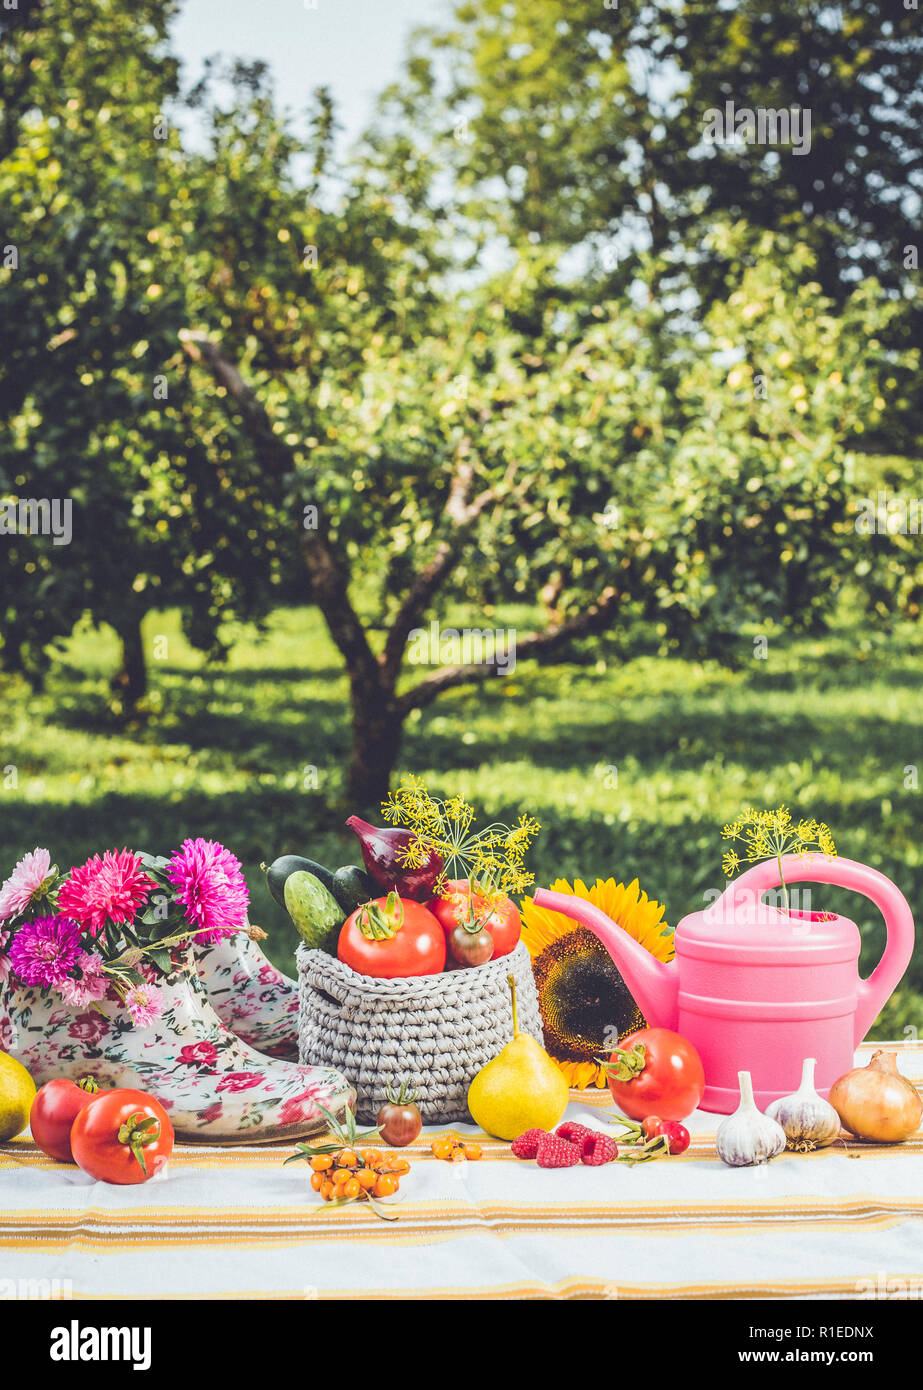 Jardinage de saison set background avec divers fruits d'automne, légumes, outils de jardinier arrosoir rose, blanc pink floral cheville wellies, outdoors Banque D'Images